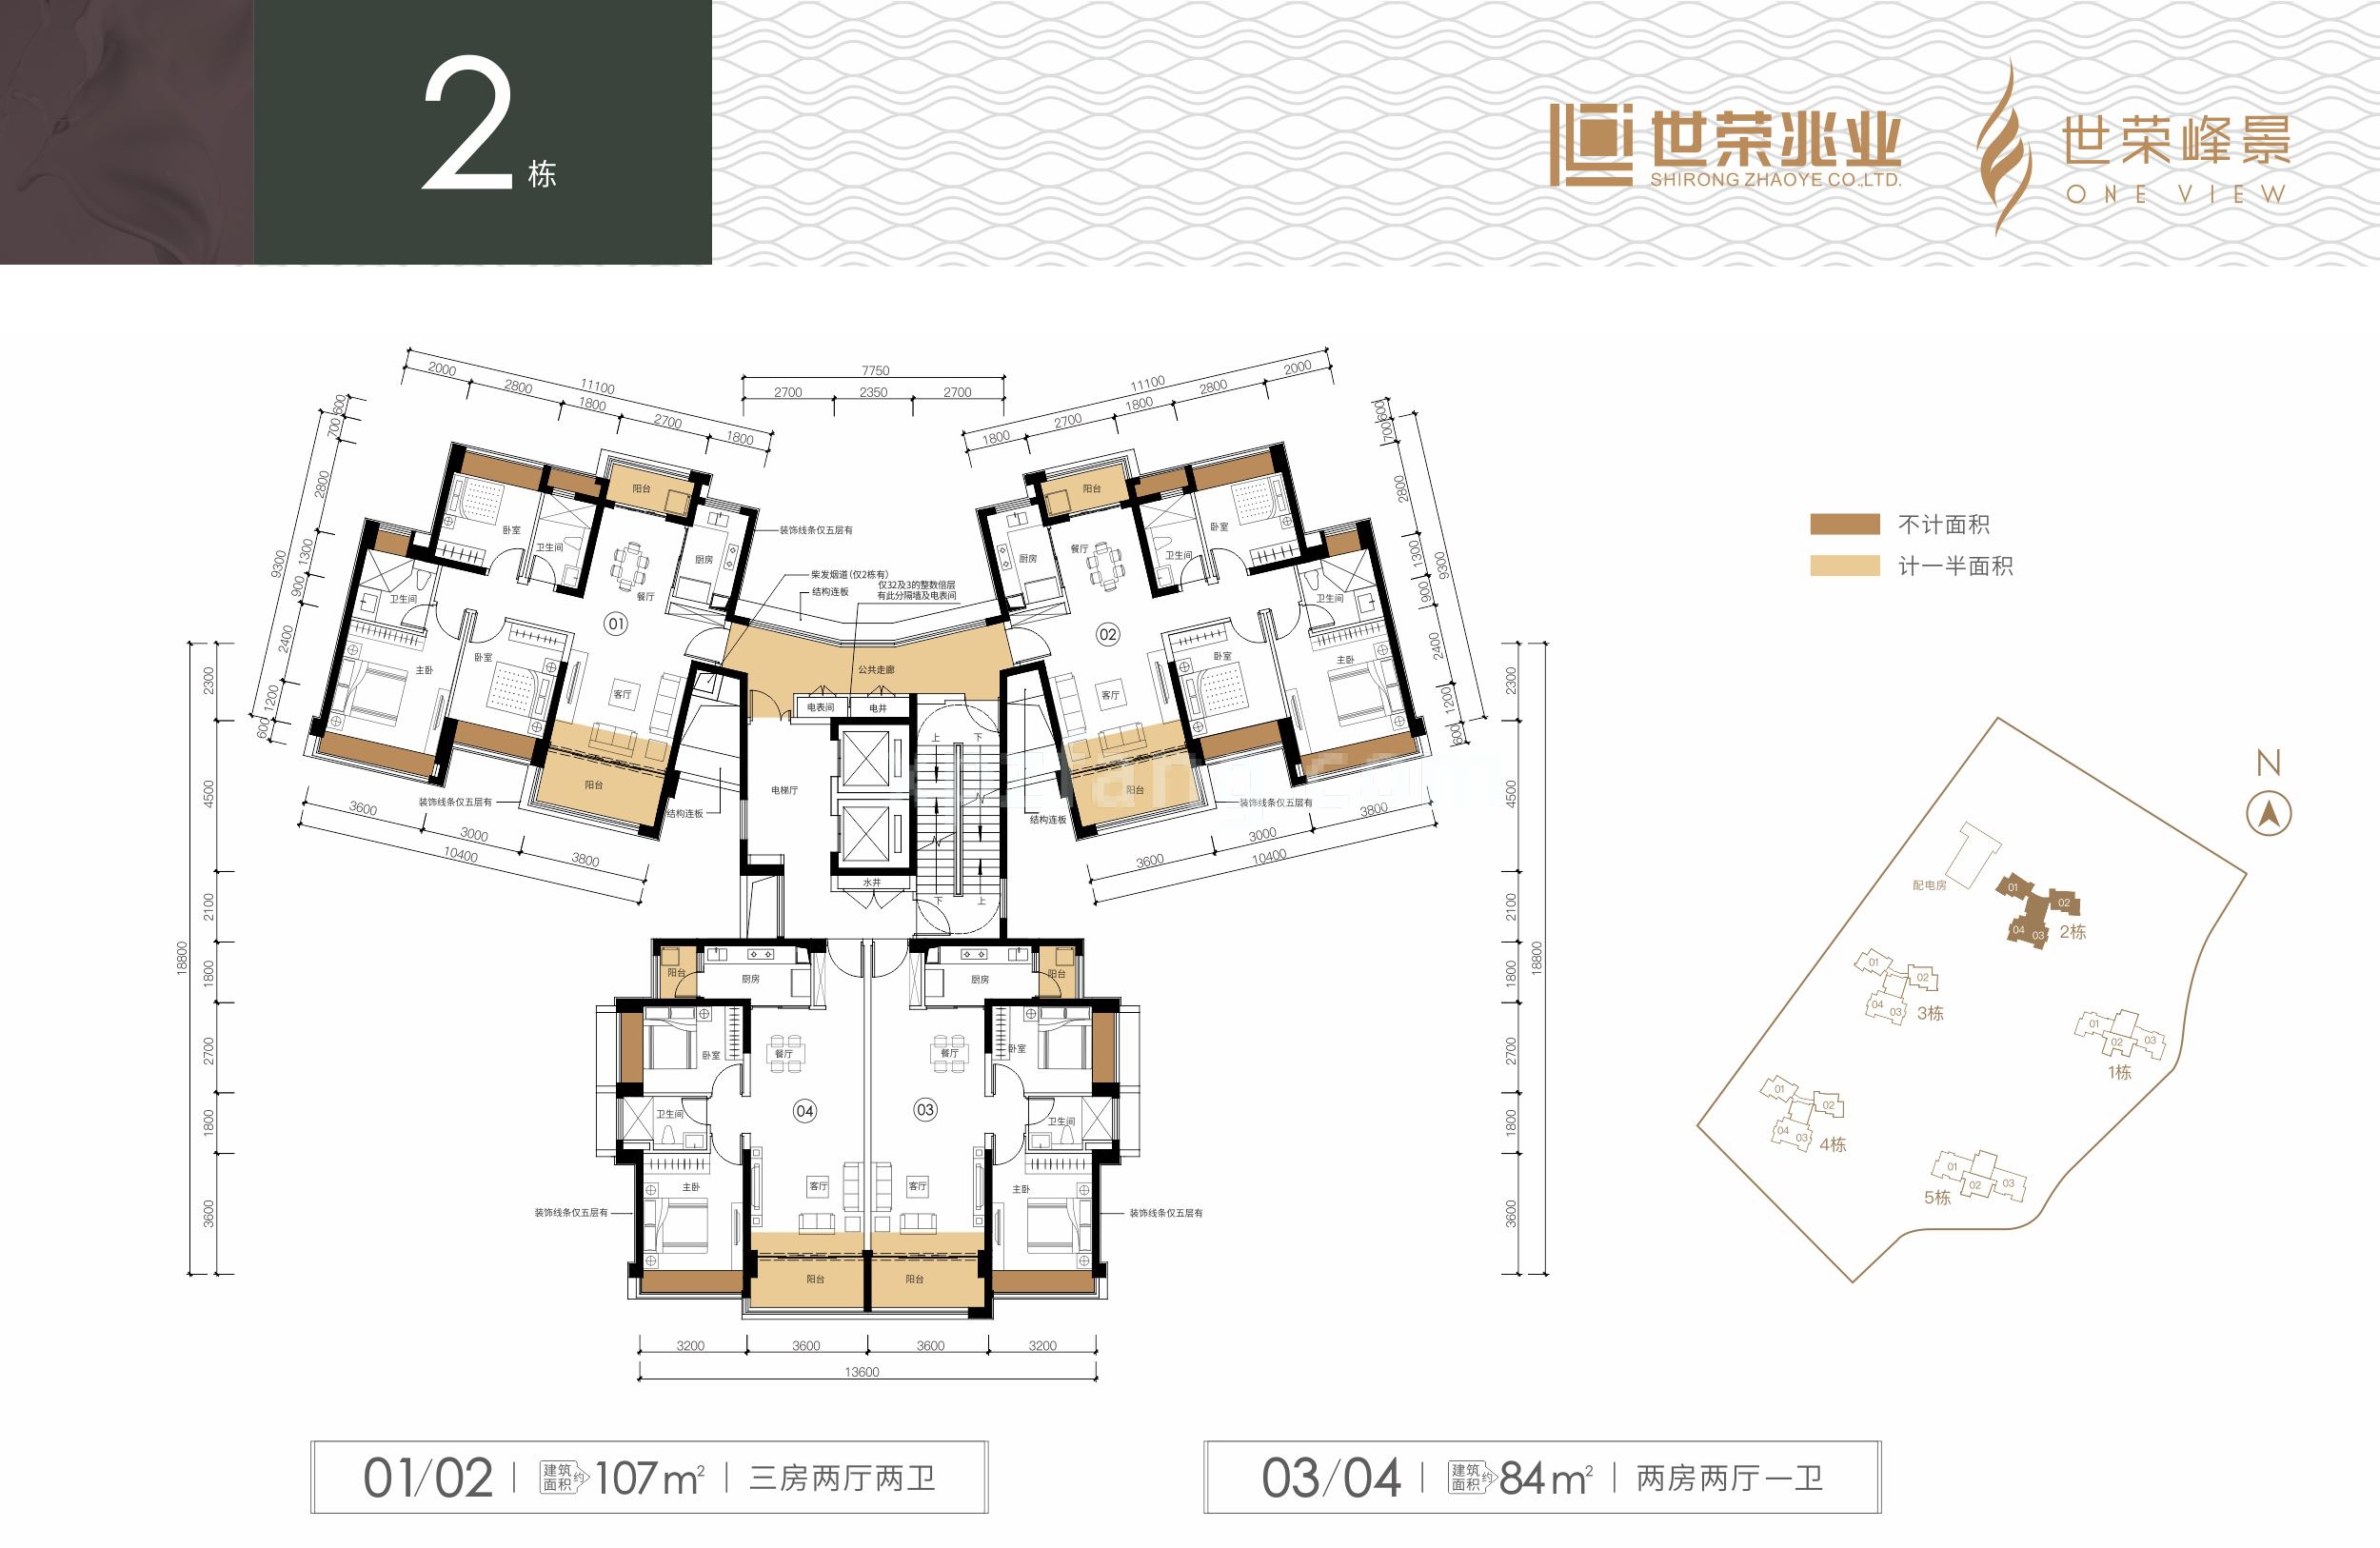 世荣峰景广场 2栋楼层平面图